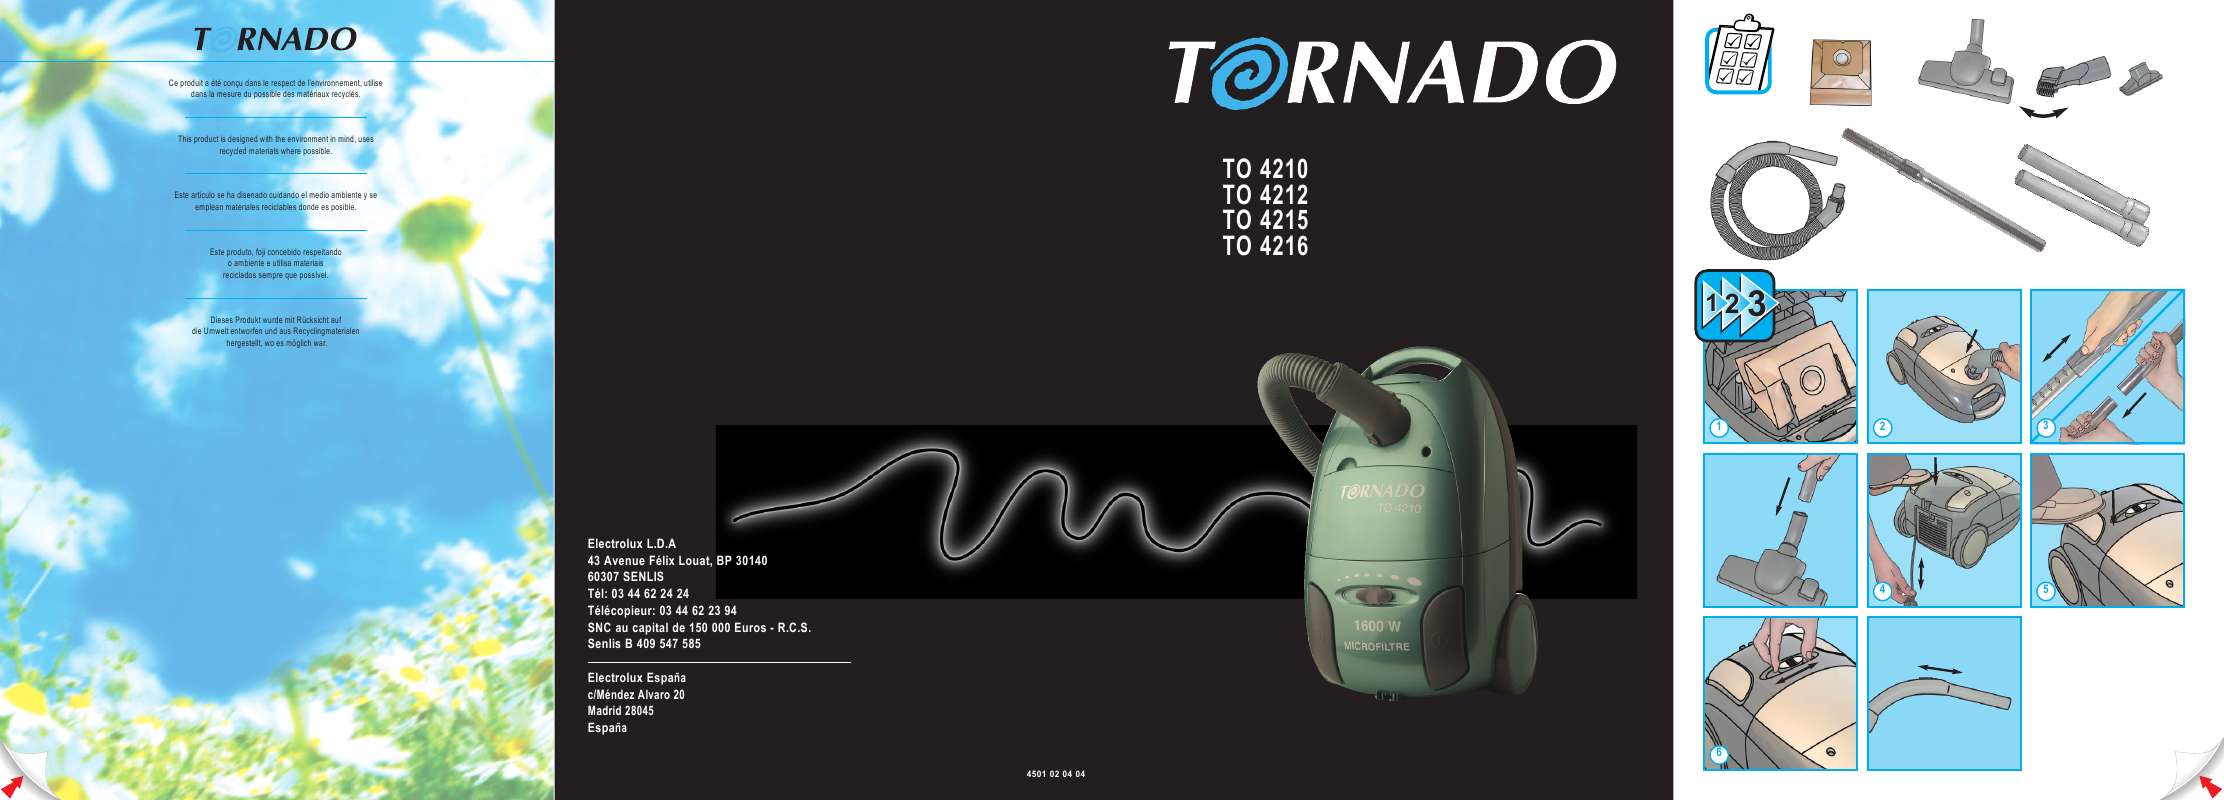 Guide utilisation TORNADO TO 4215 de la marque TORNADO